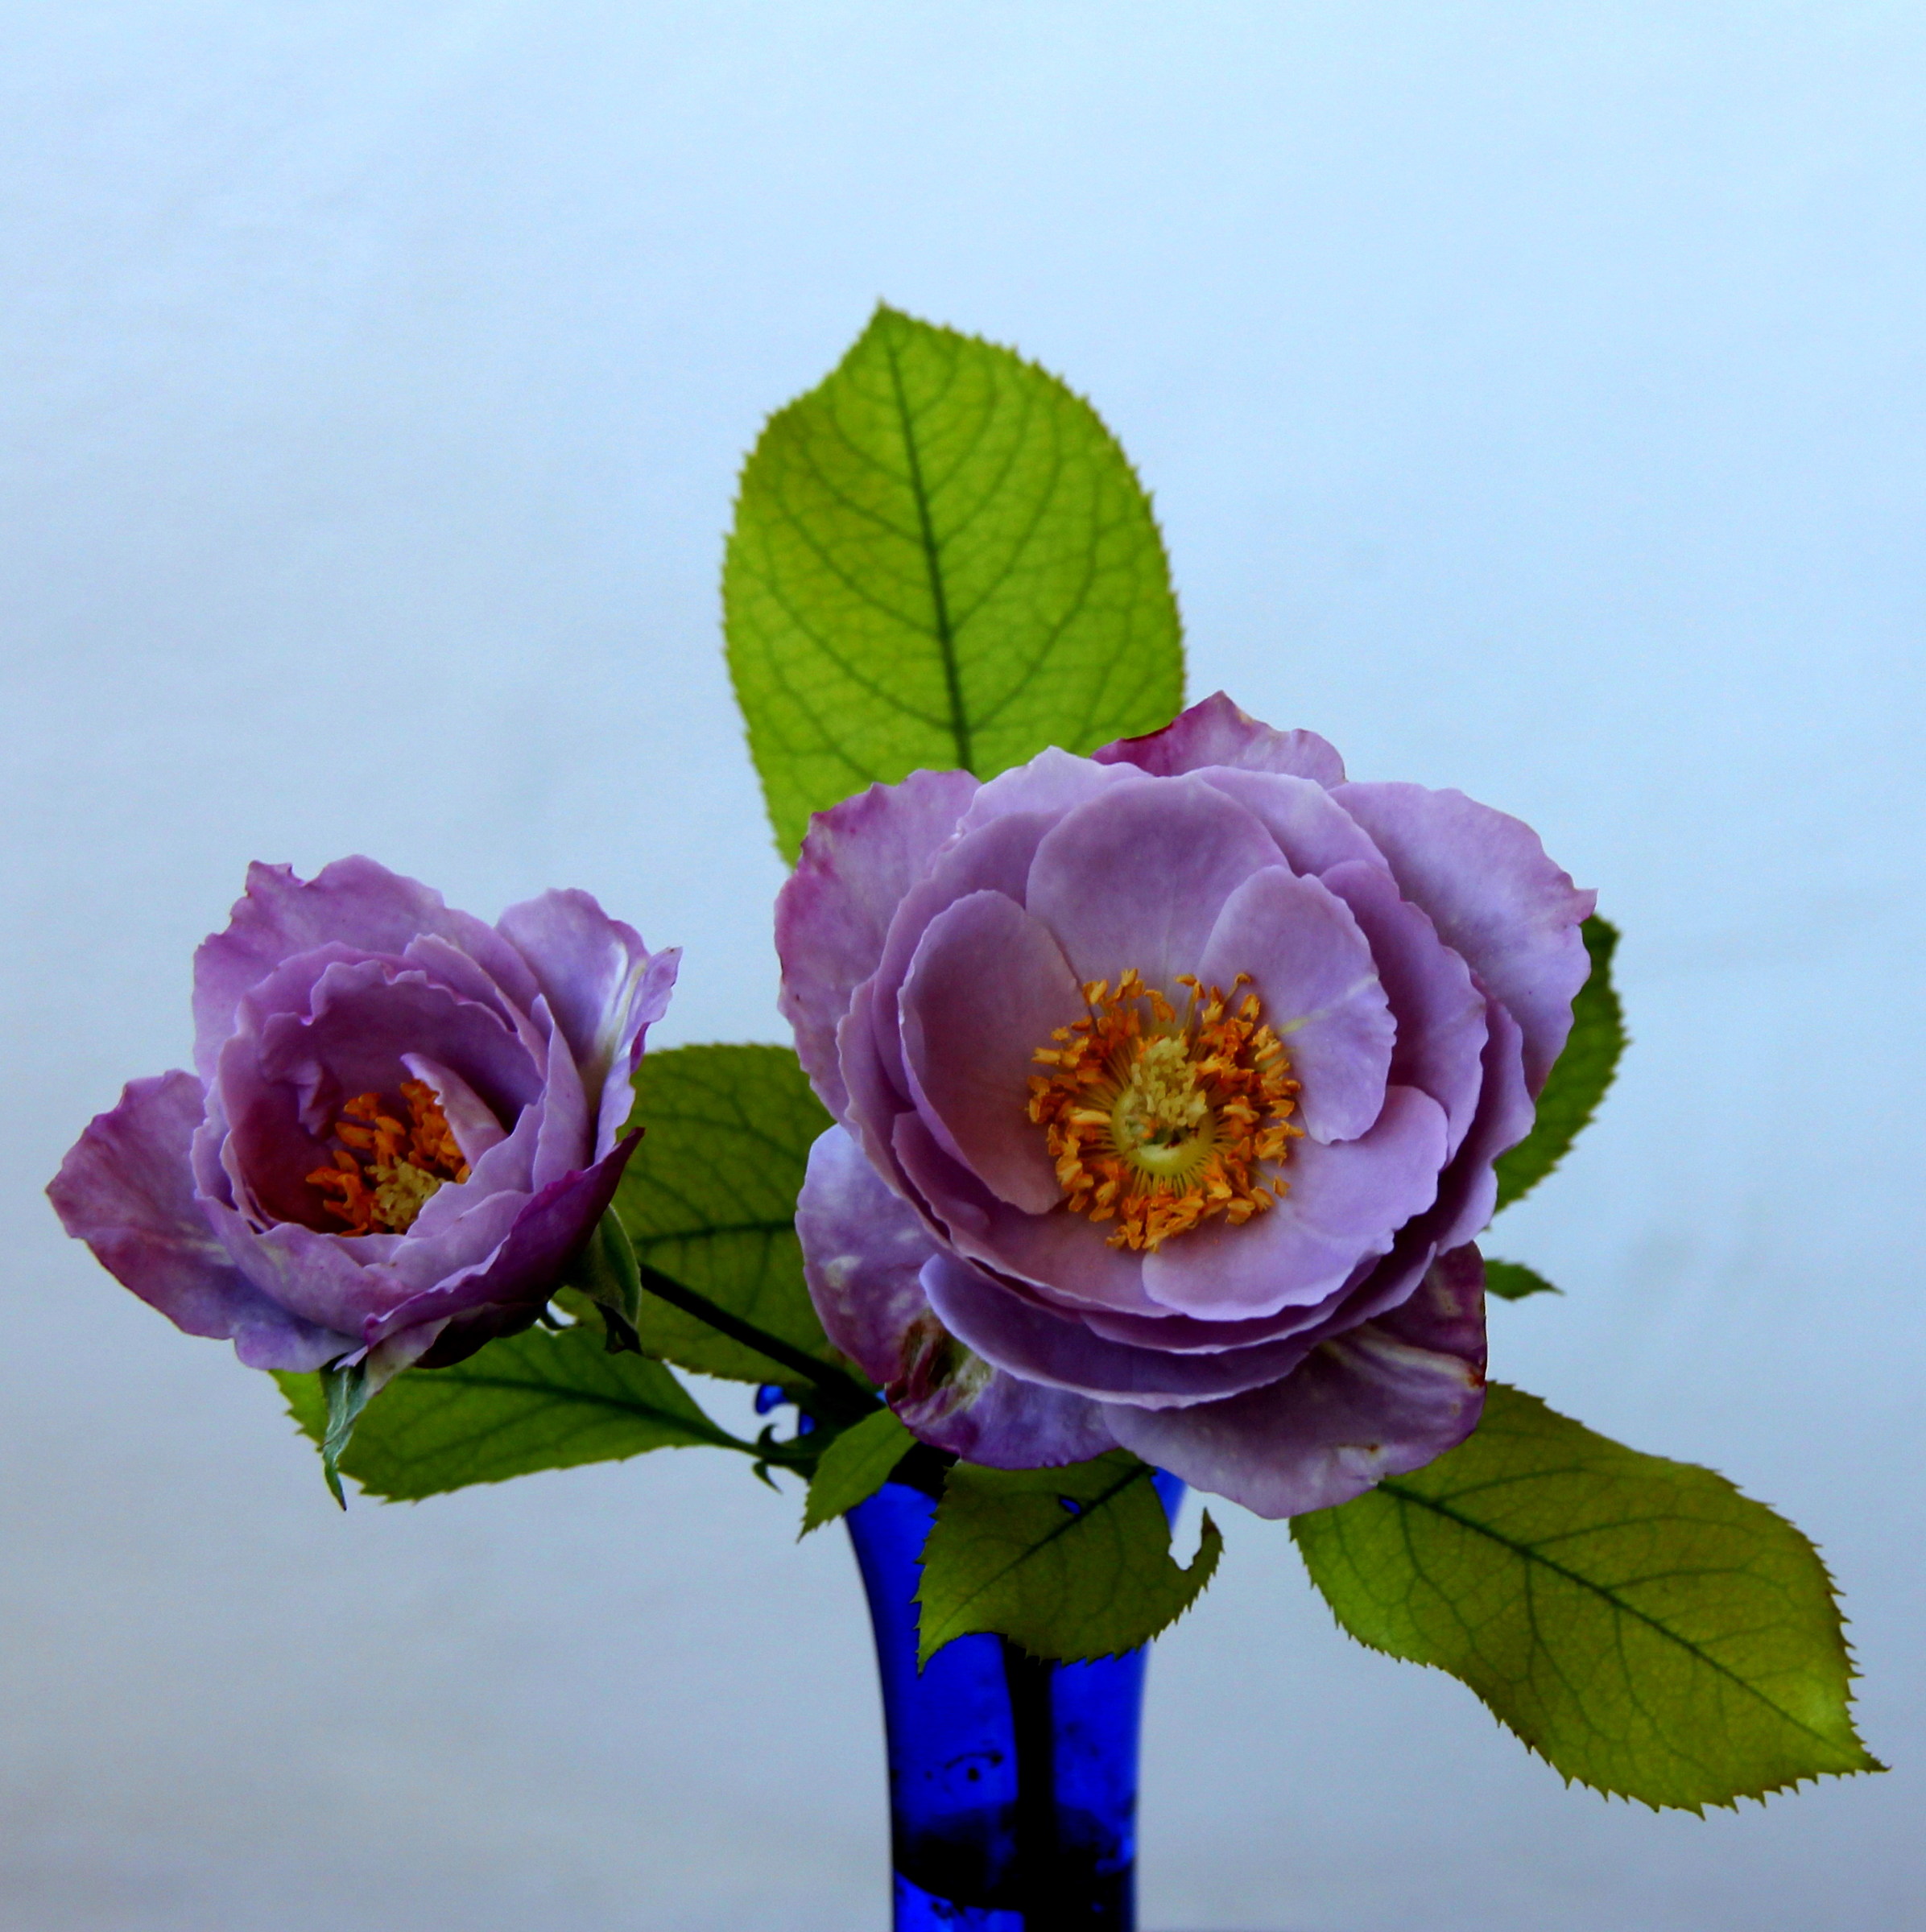 Le rose lilla del mio giardino...